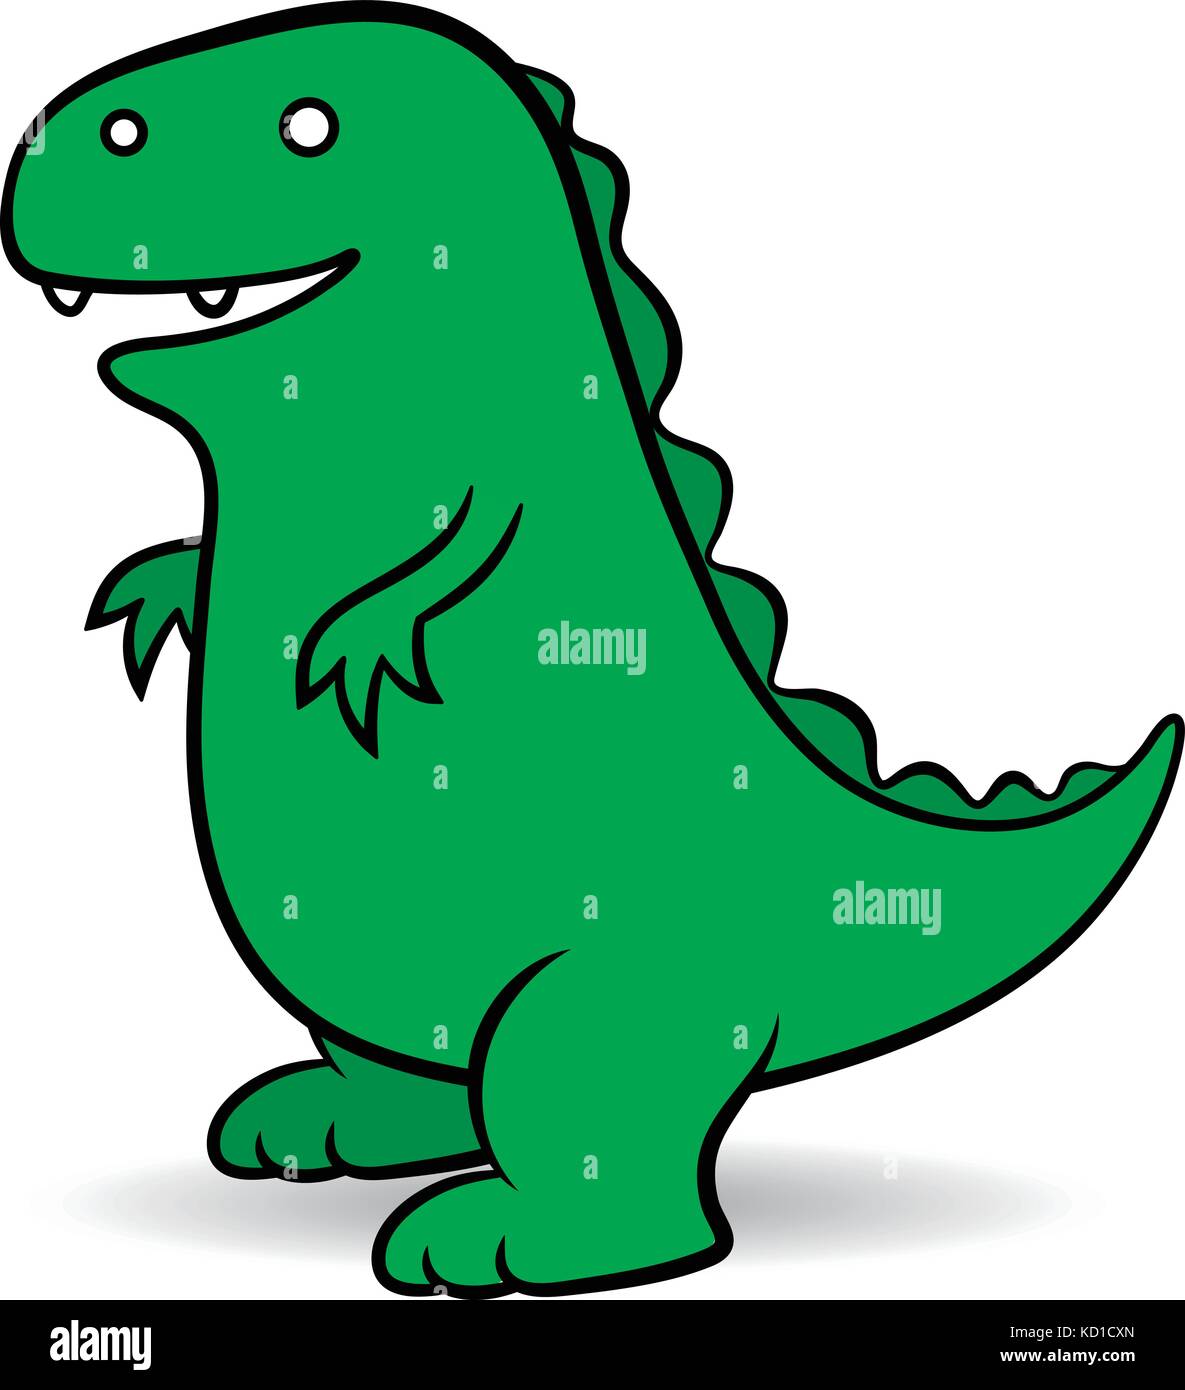 Dessin animé vert un géant fictif godzilla monstre décrit comme un reptile amphibie ressemblant à un dinosaure, illustration dessinée vectorielle simple Illustration de Vecteur